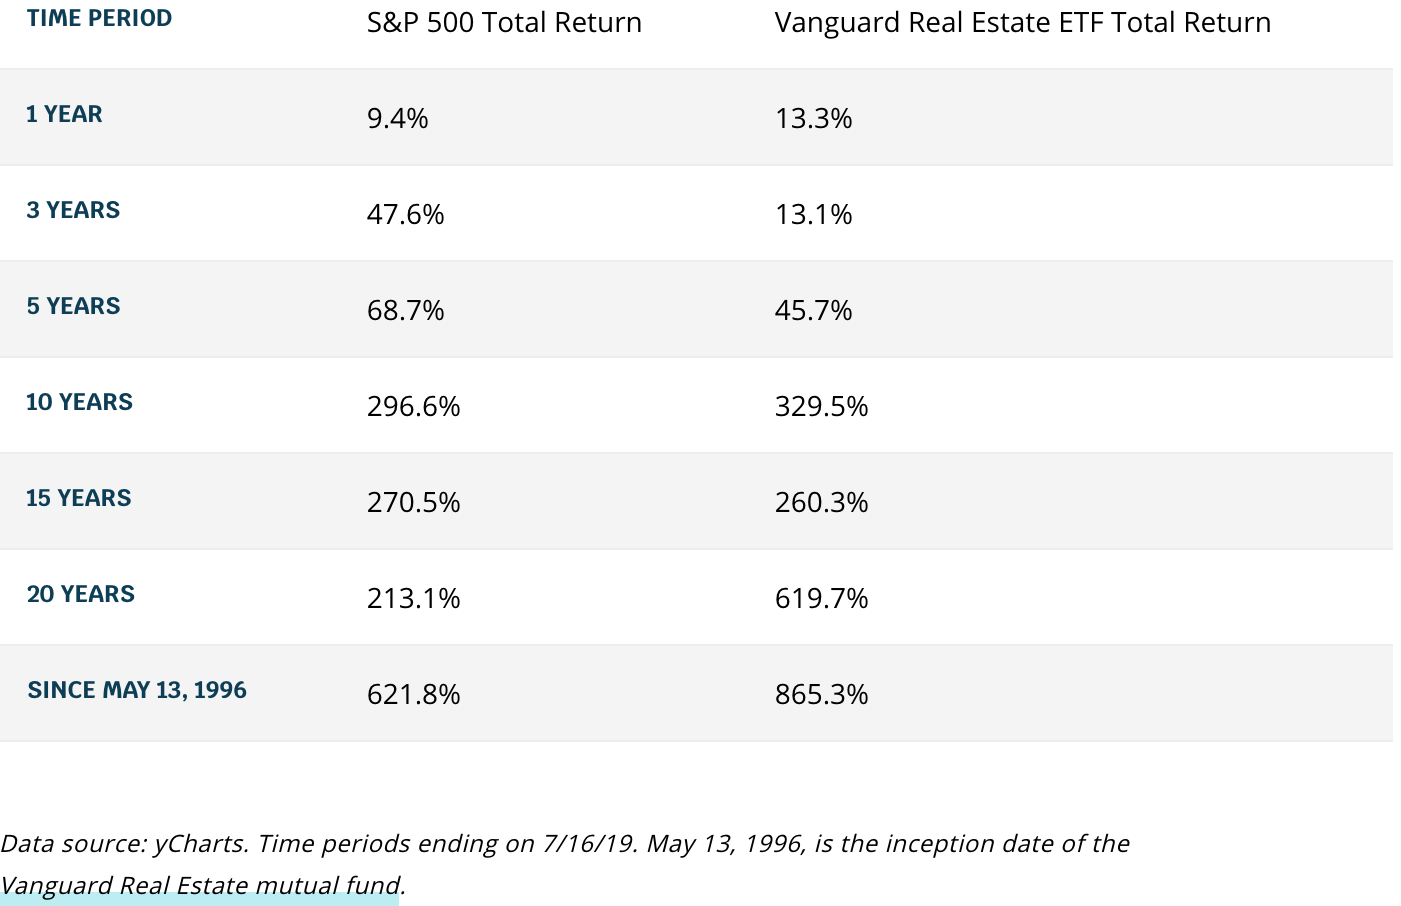 S&P 500 total return versus Vanguard Real Estate ETF total return